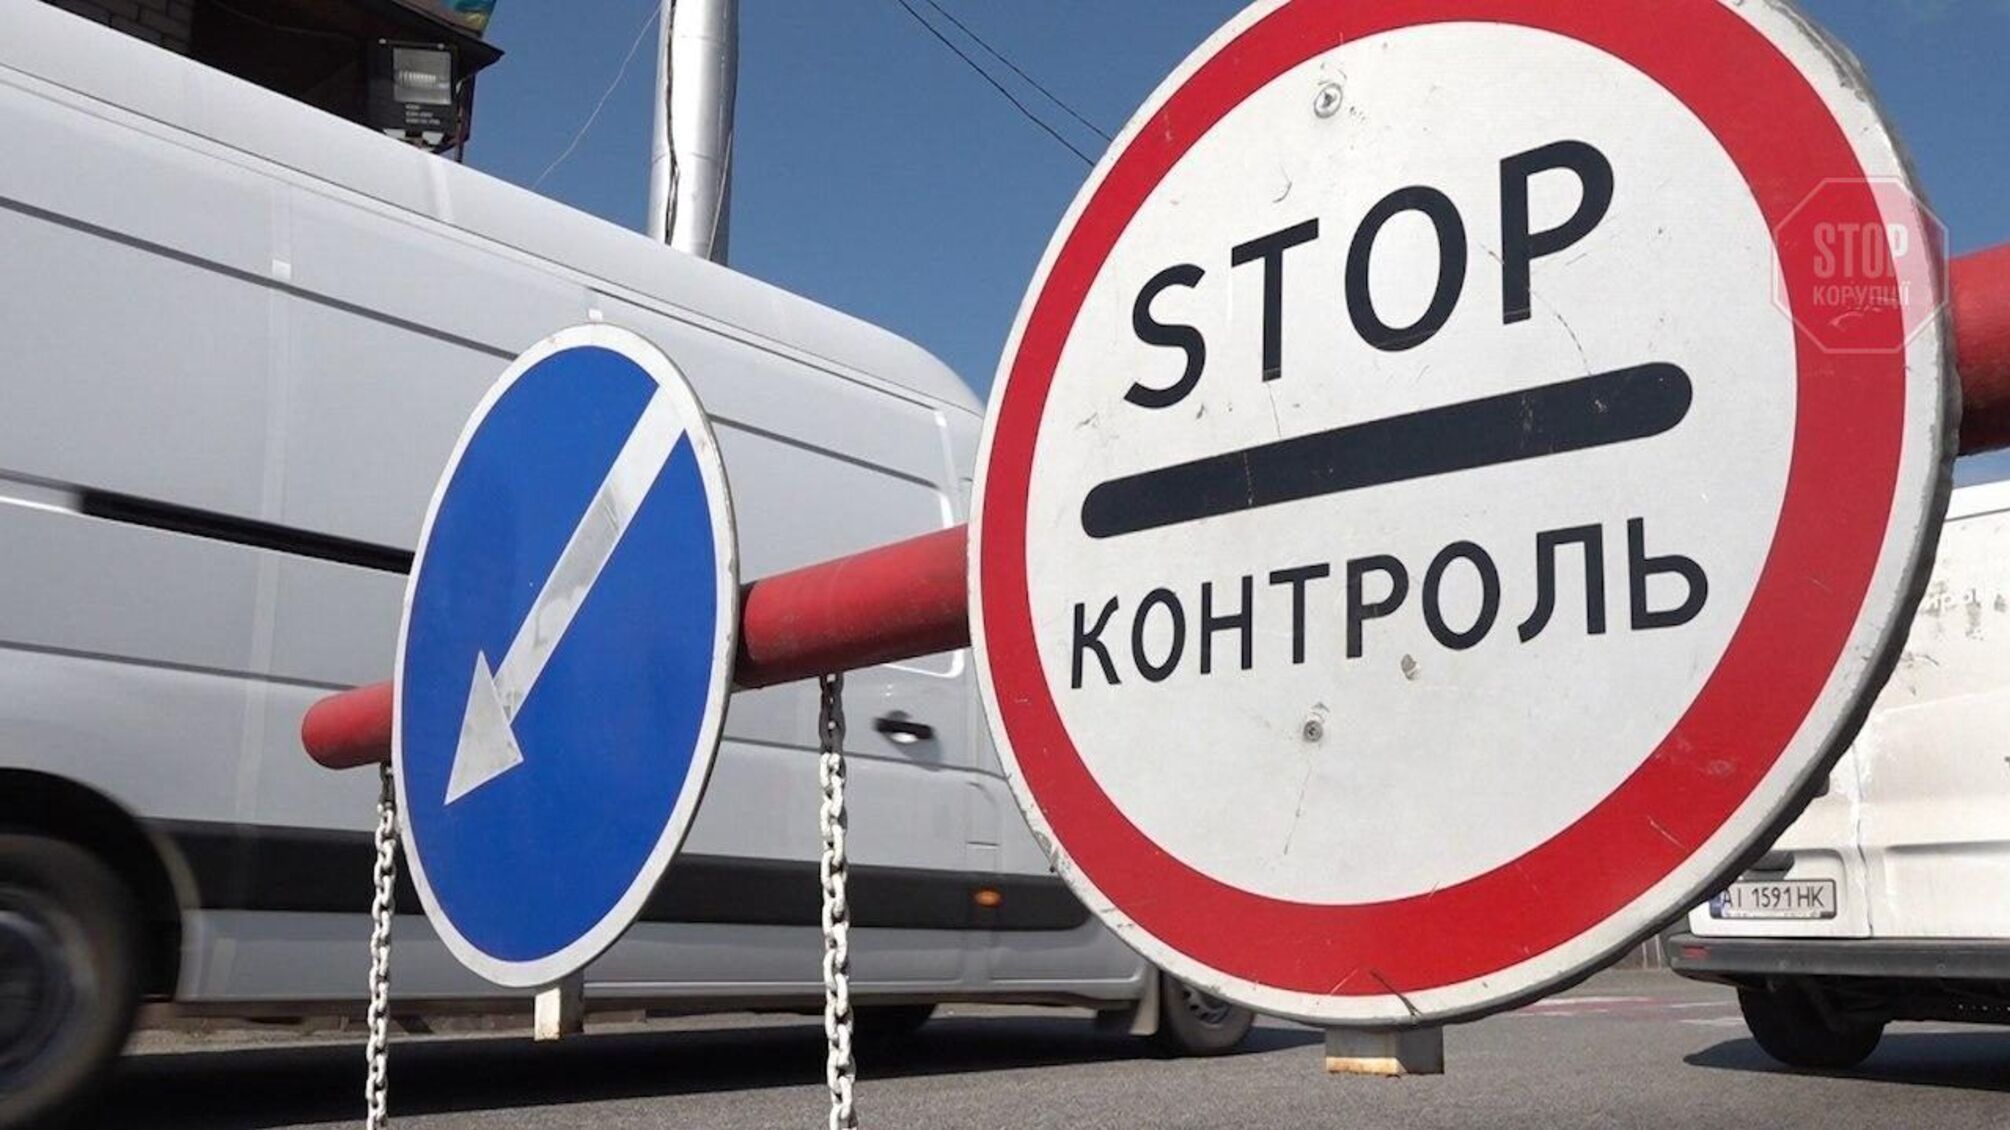 Кількість блокпостів у Києві збільшиться - причина